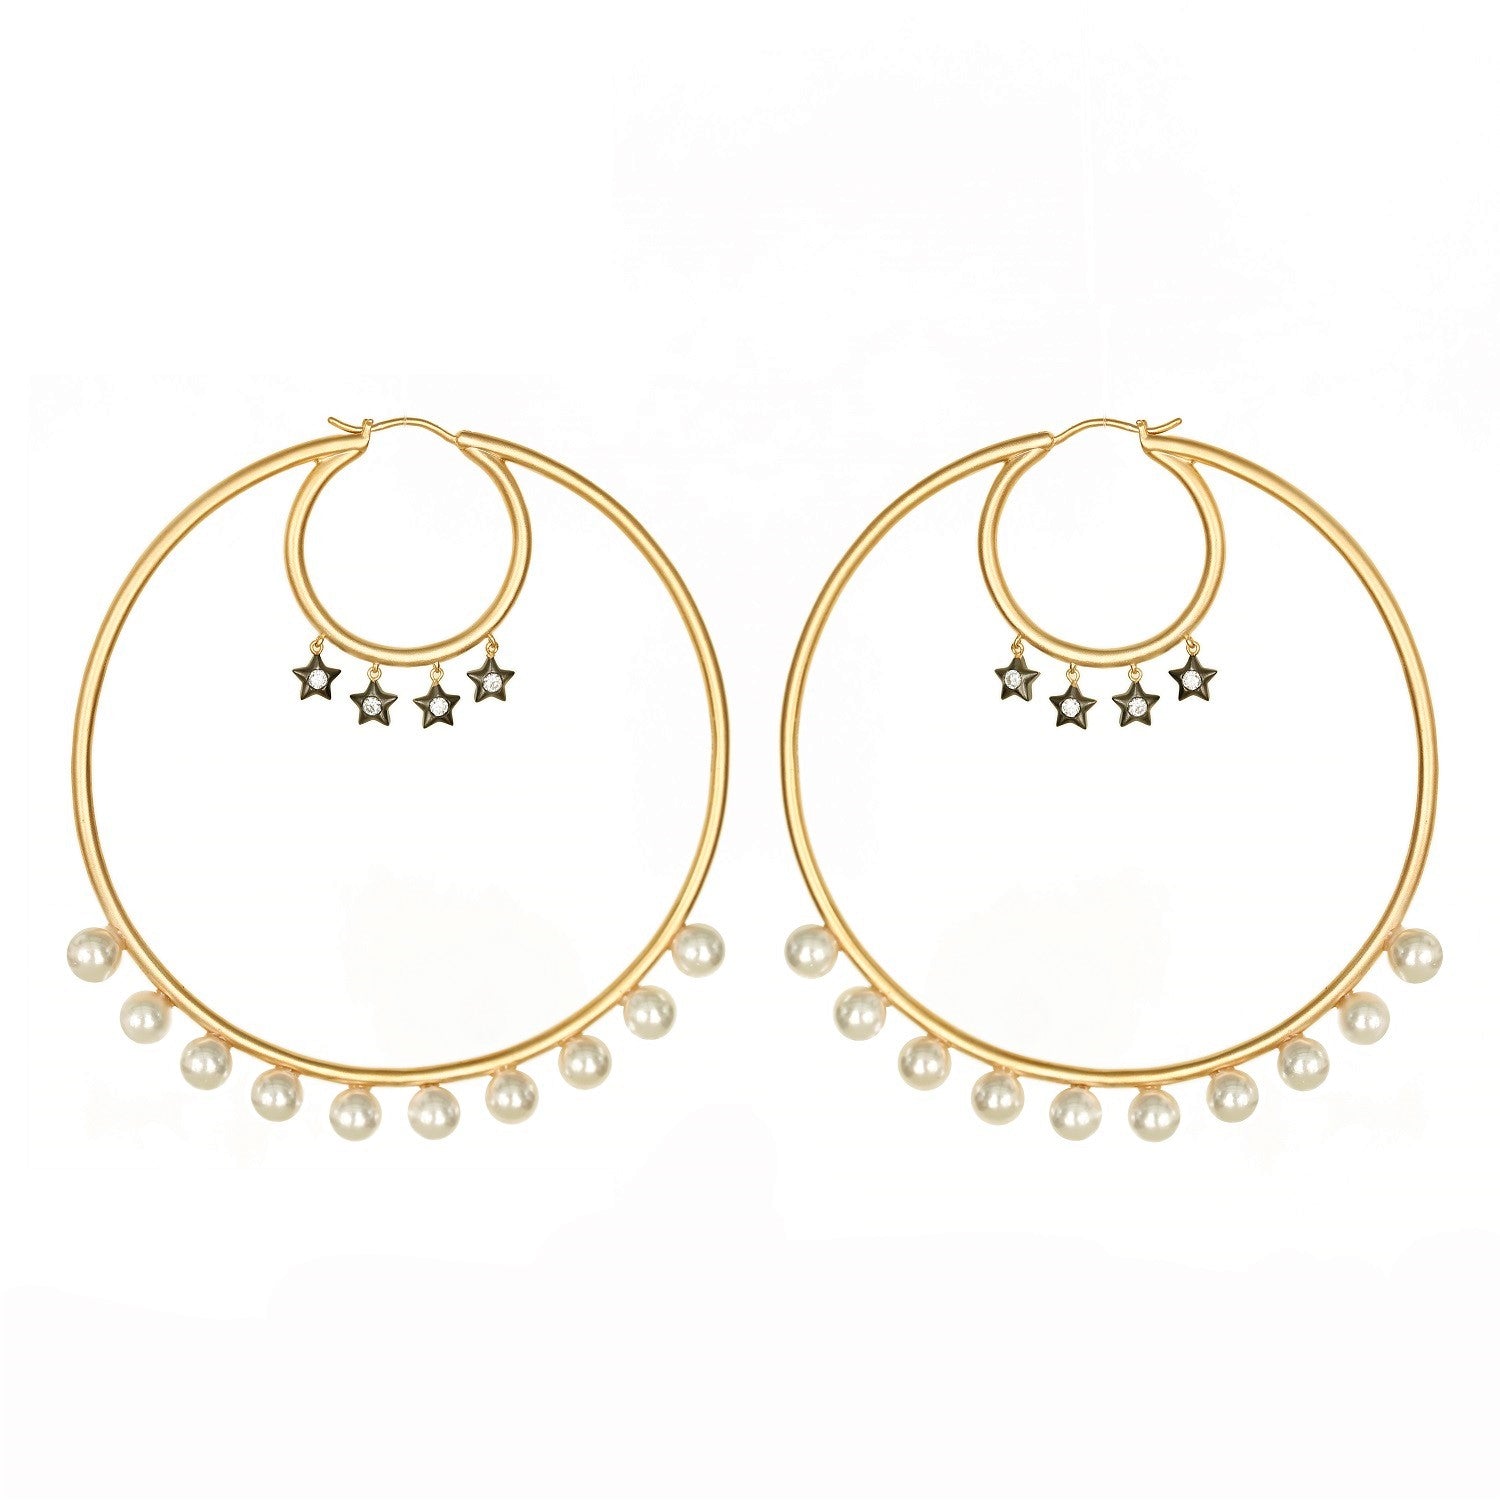 Large Hoop Earrings With Pearls Vermeil Gold